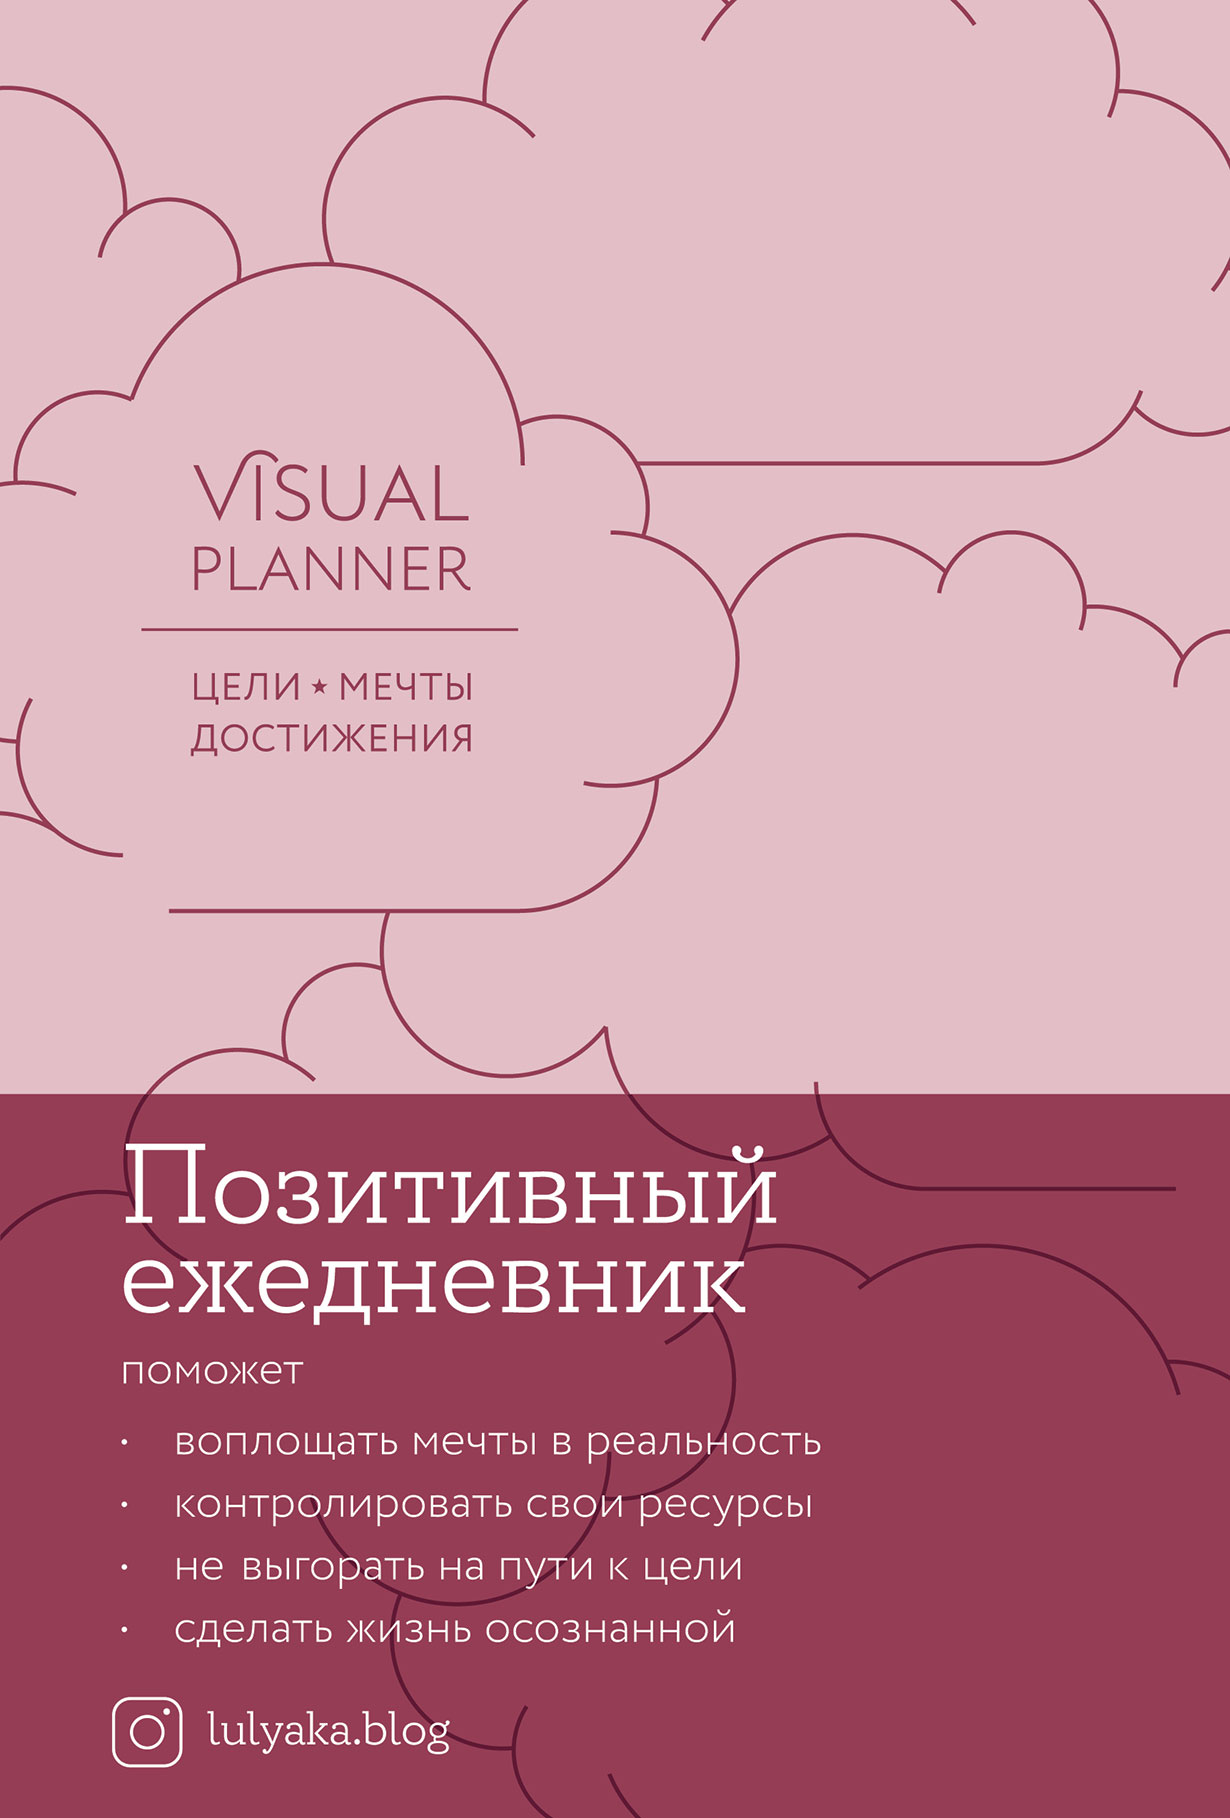 фото Книга visual planner цели мечты достижения позитивный ежедневник от @lulyaka.blog розов... альпина паблишер